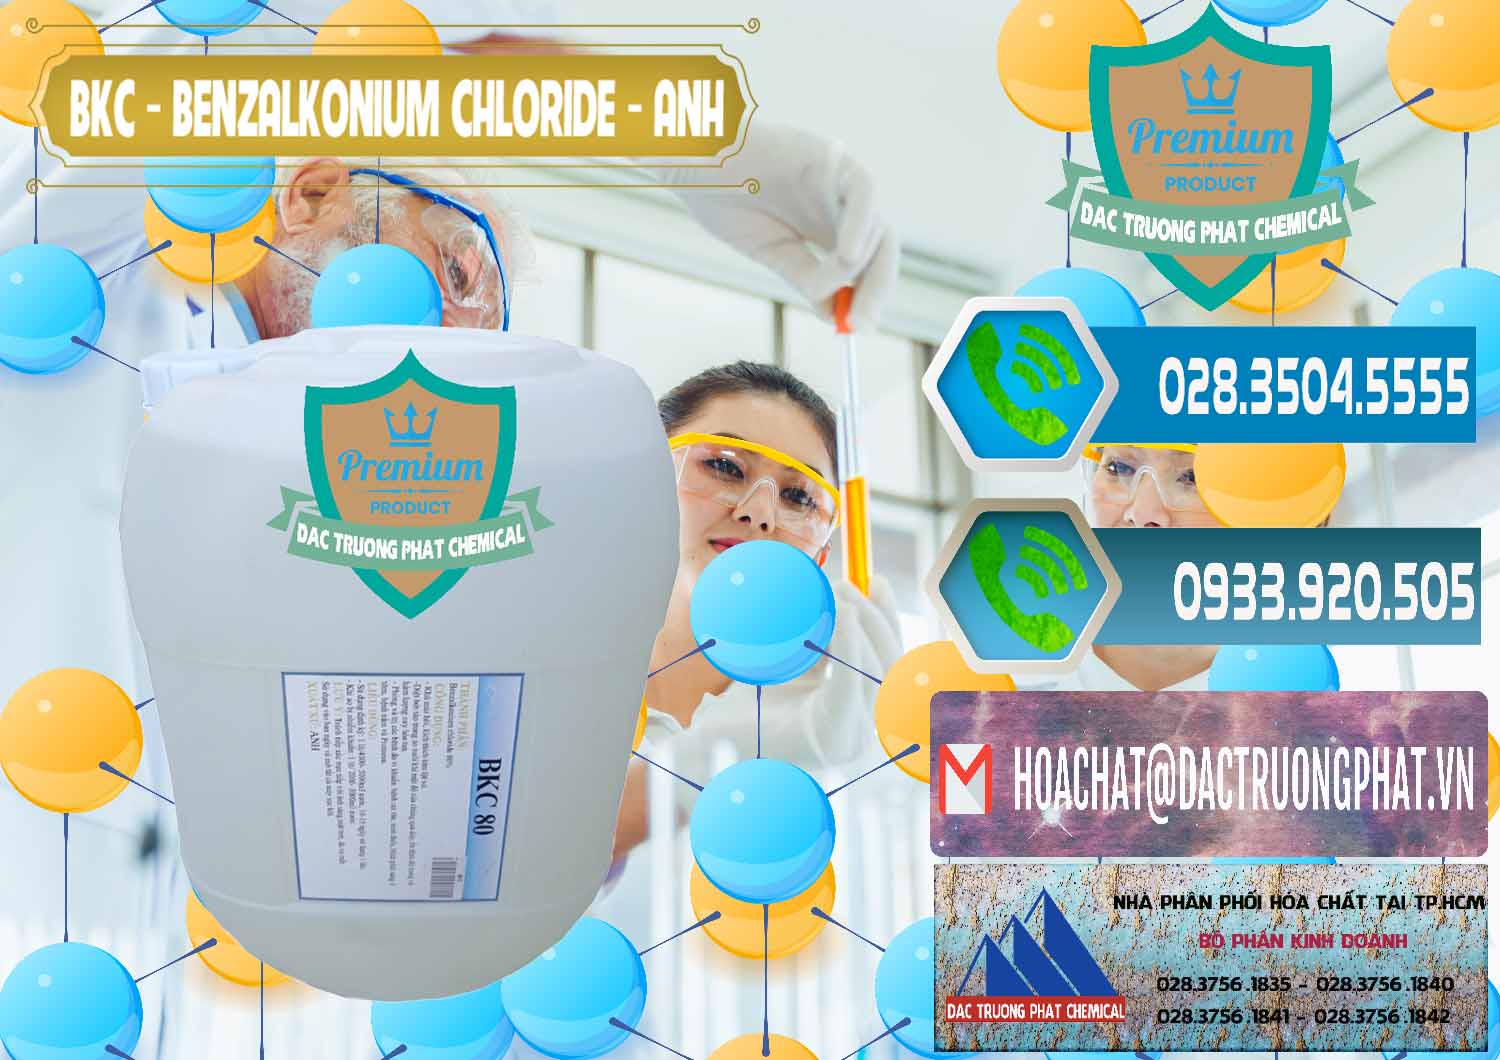 Đơn vị kinh doanh và bán BKC - Benzalkonium Chloride Anh Quốc Uk Kingdoms - 0415 - Cung cấp - phân phối hóa chất tại TP.HCM - congtyhoachat.net